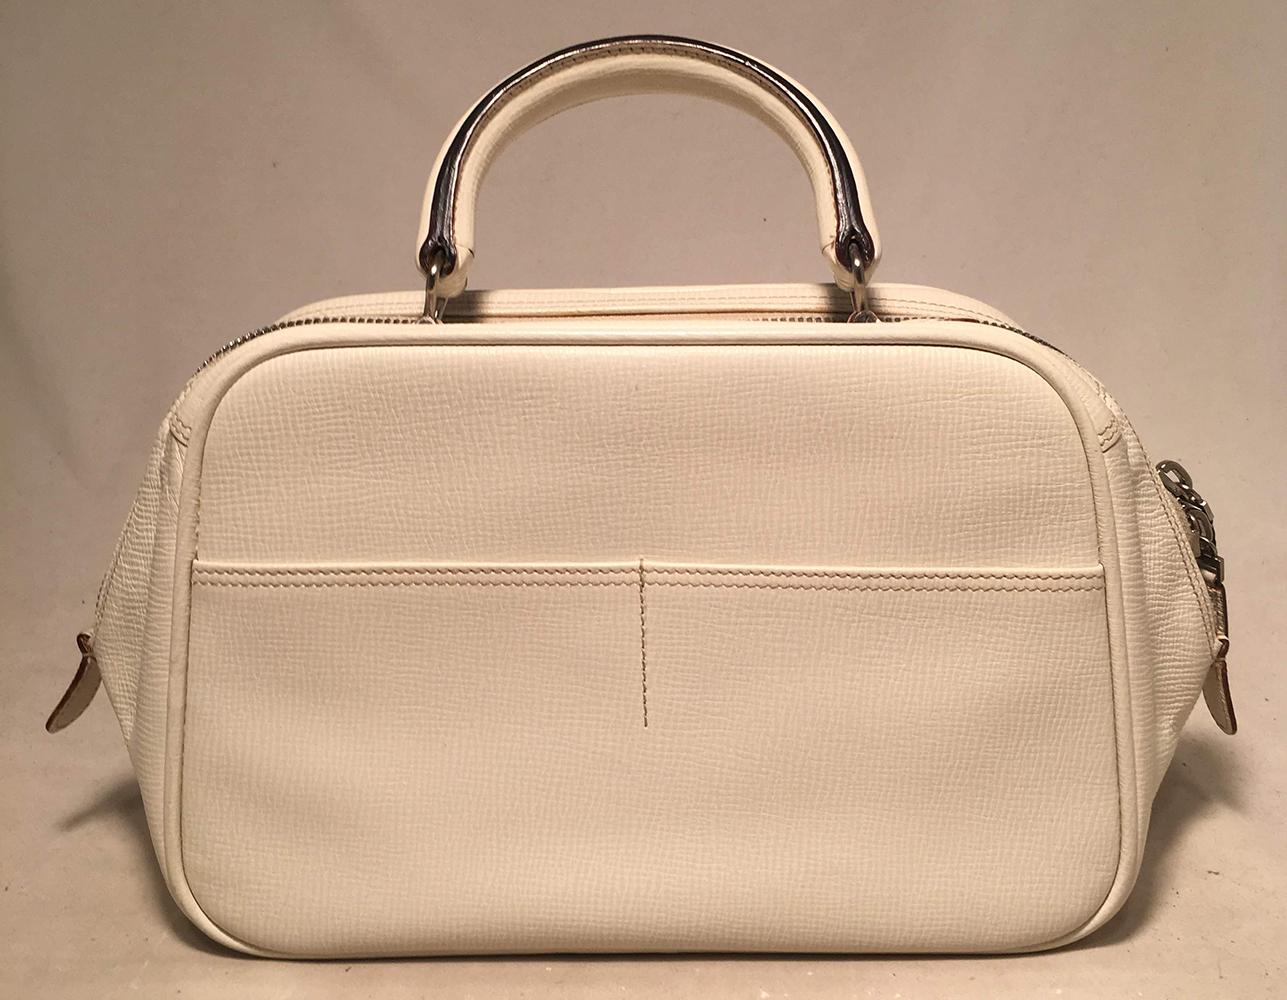 Valextra Serie S Medium Bag in White